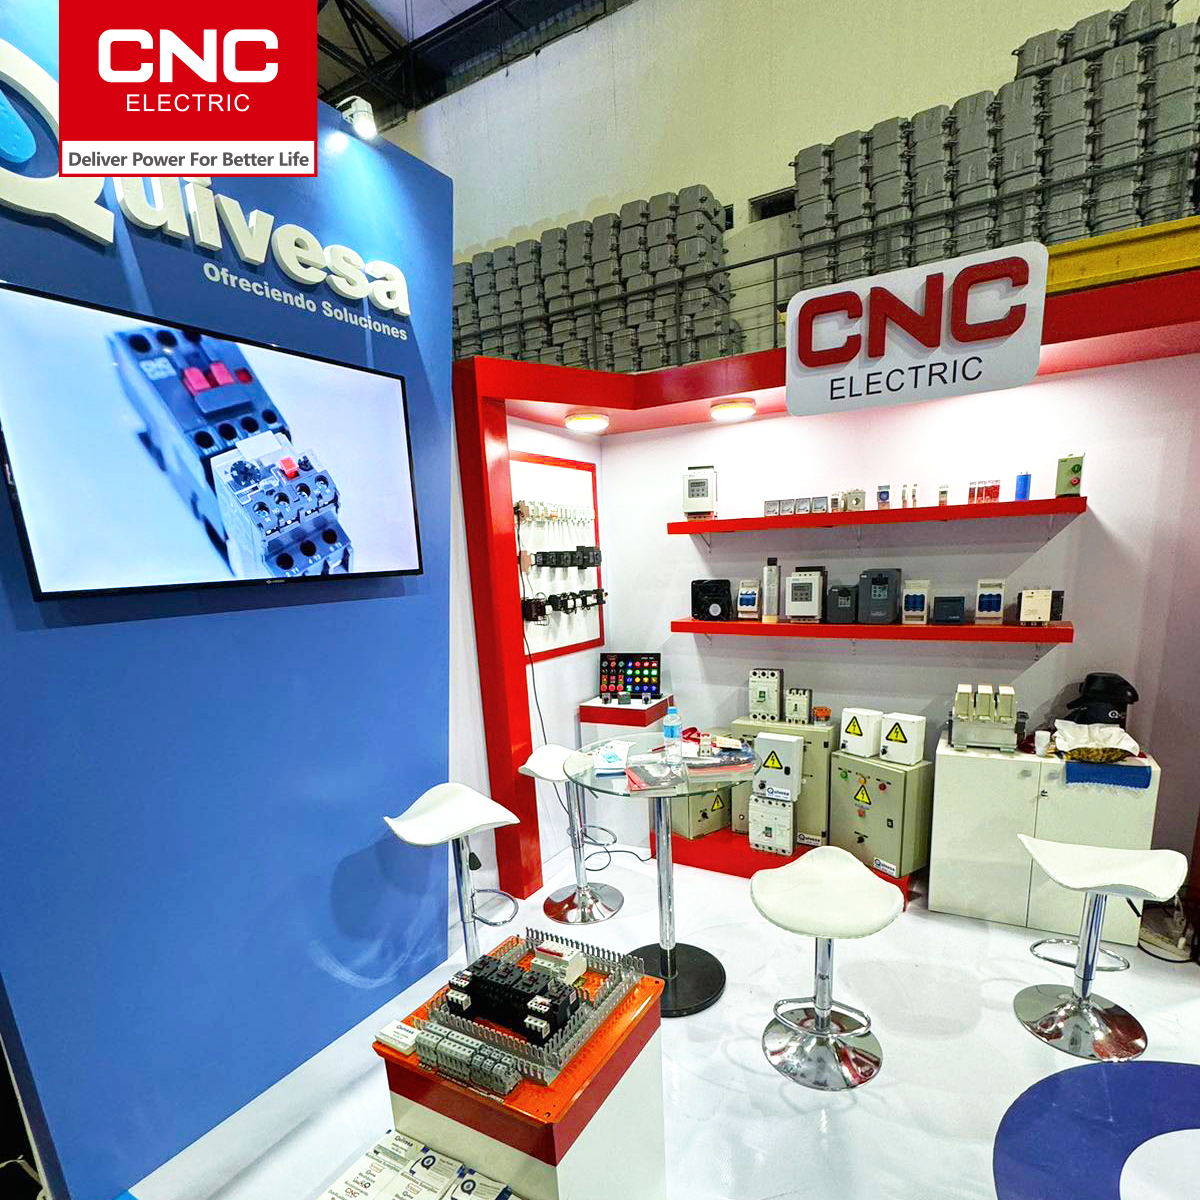 CNC |CNC Electric dalam pameran di Paraguay